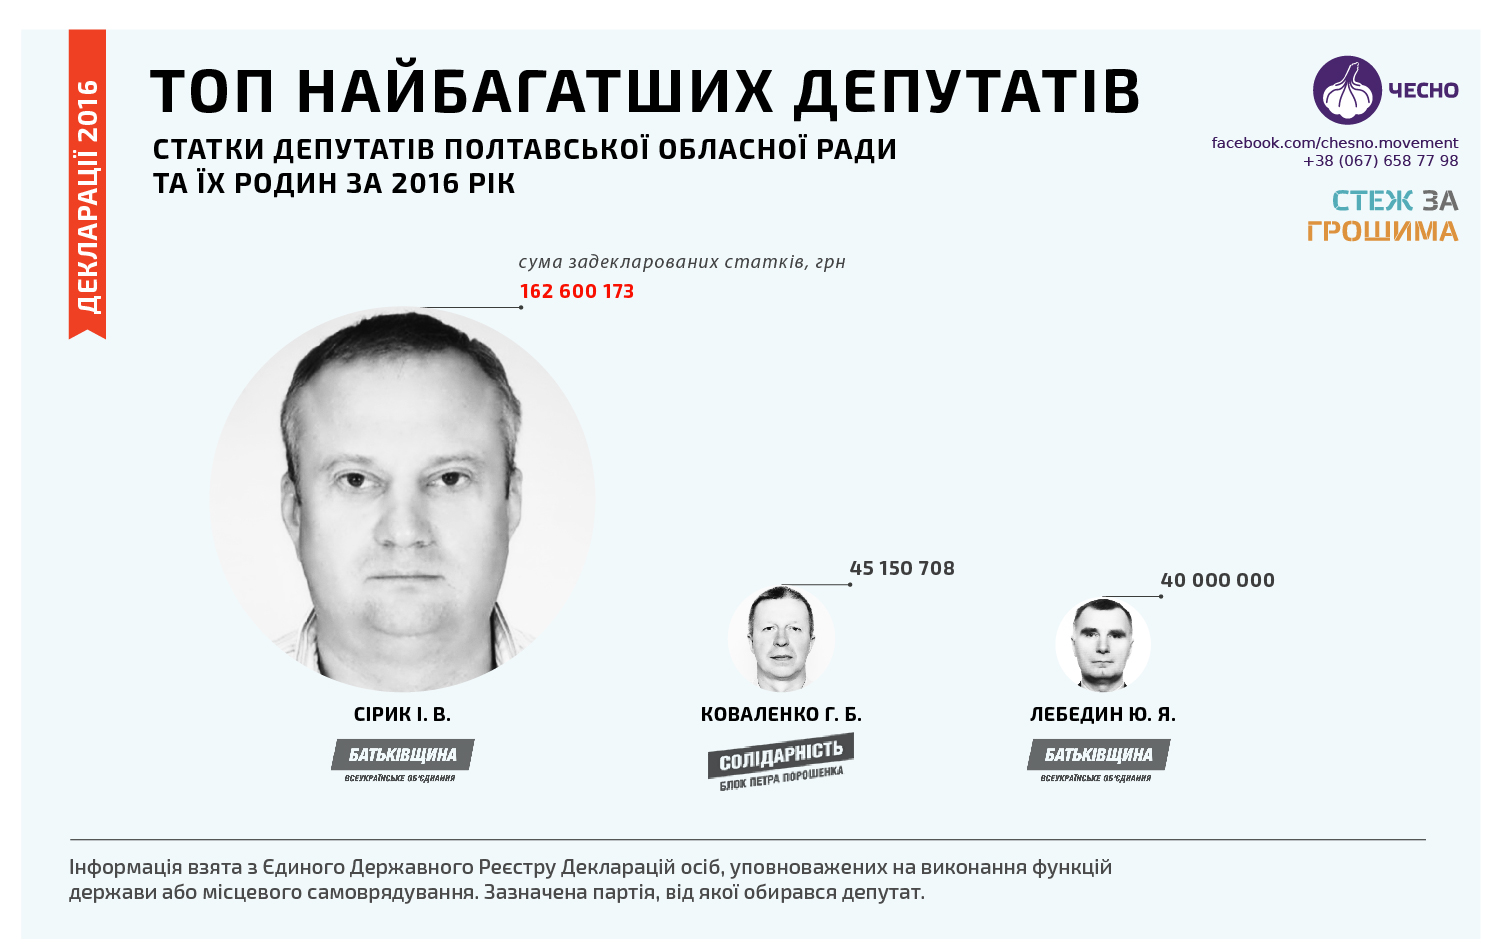 ТОП-3 самых богатых депутатов Полтавского облсовета